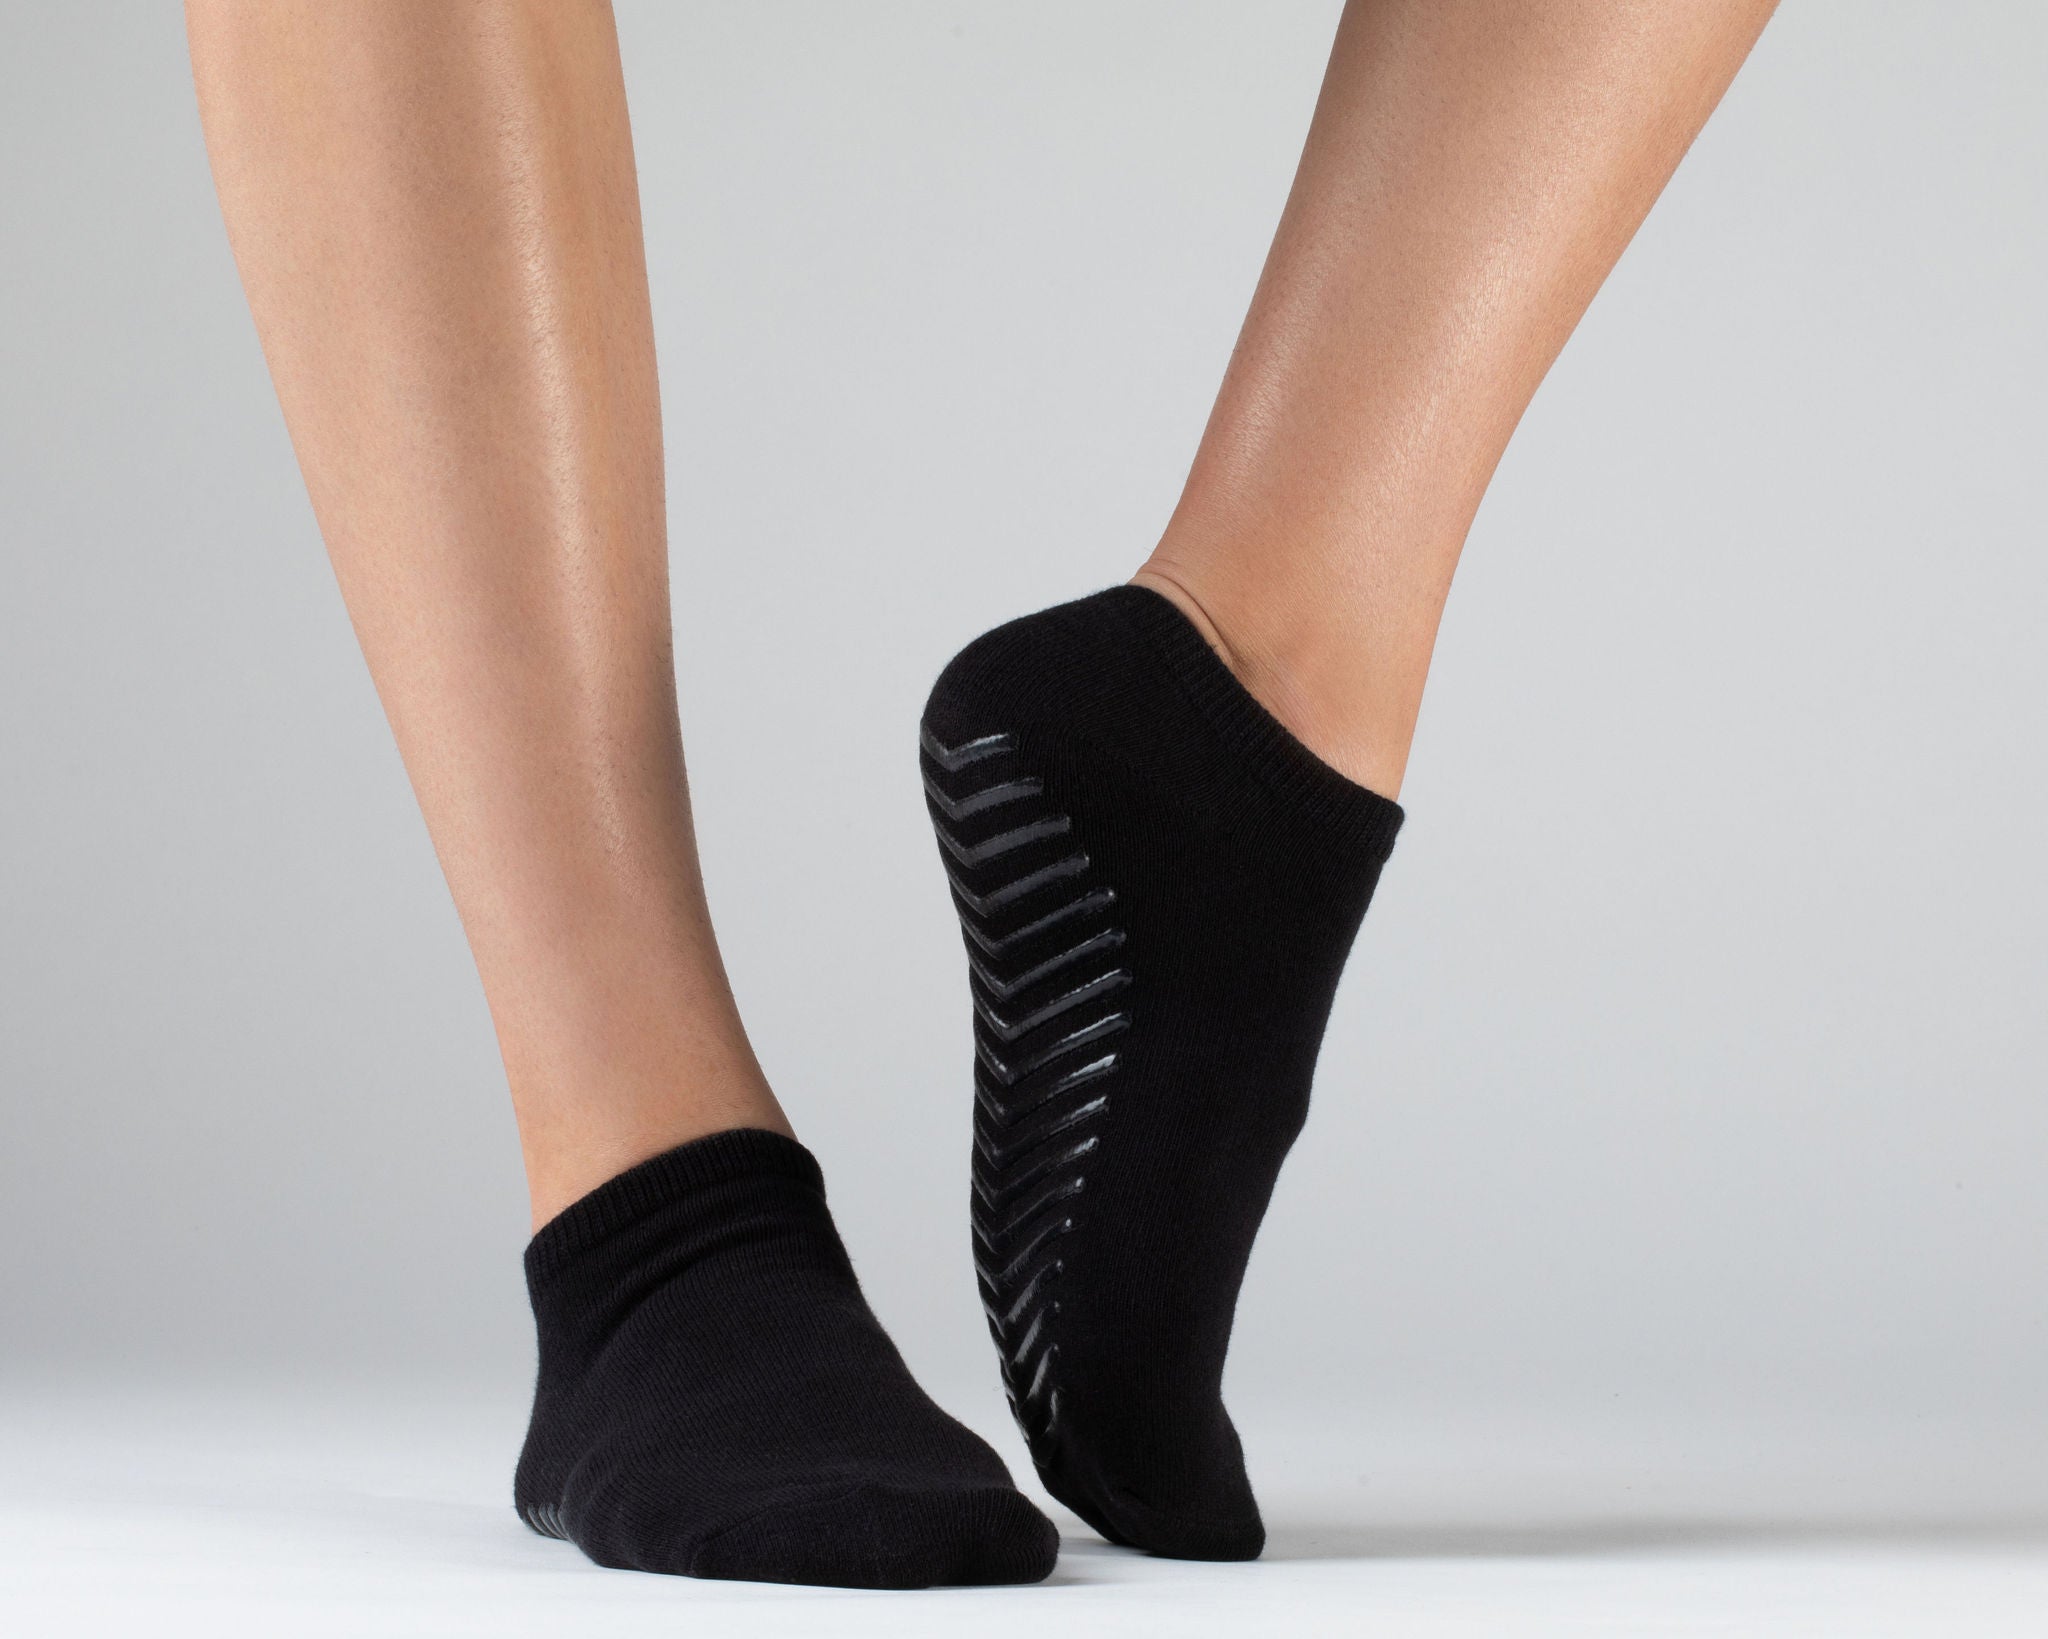 Chalier Non Slip Socks for Women and Men Anti Skid Grip Socks for